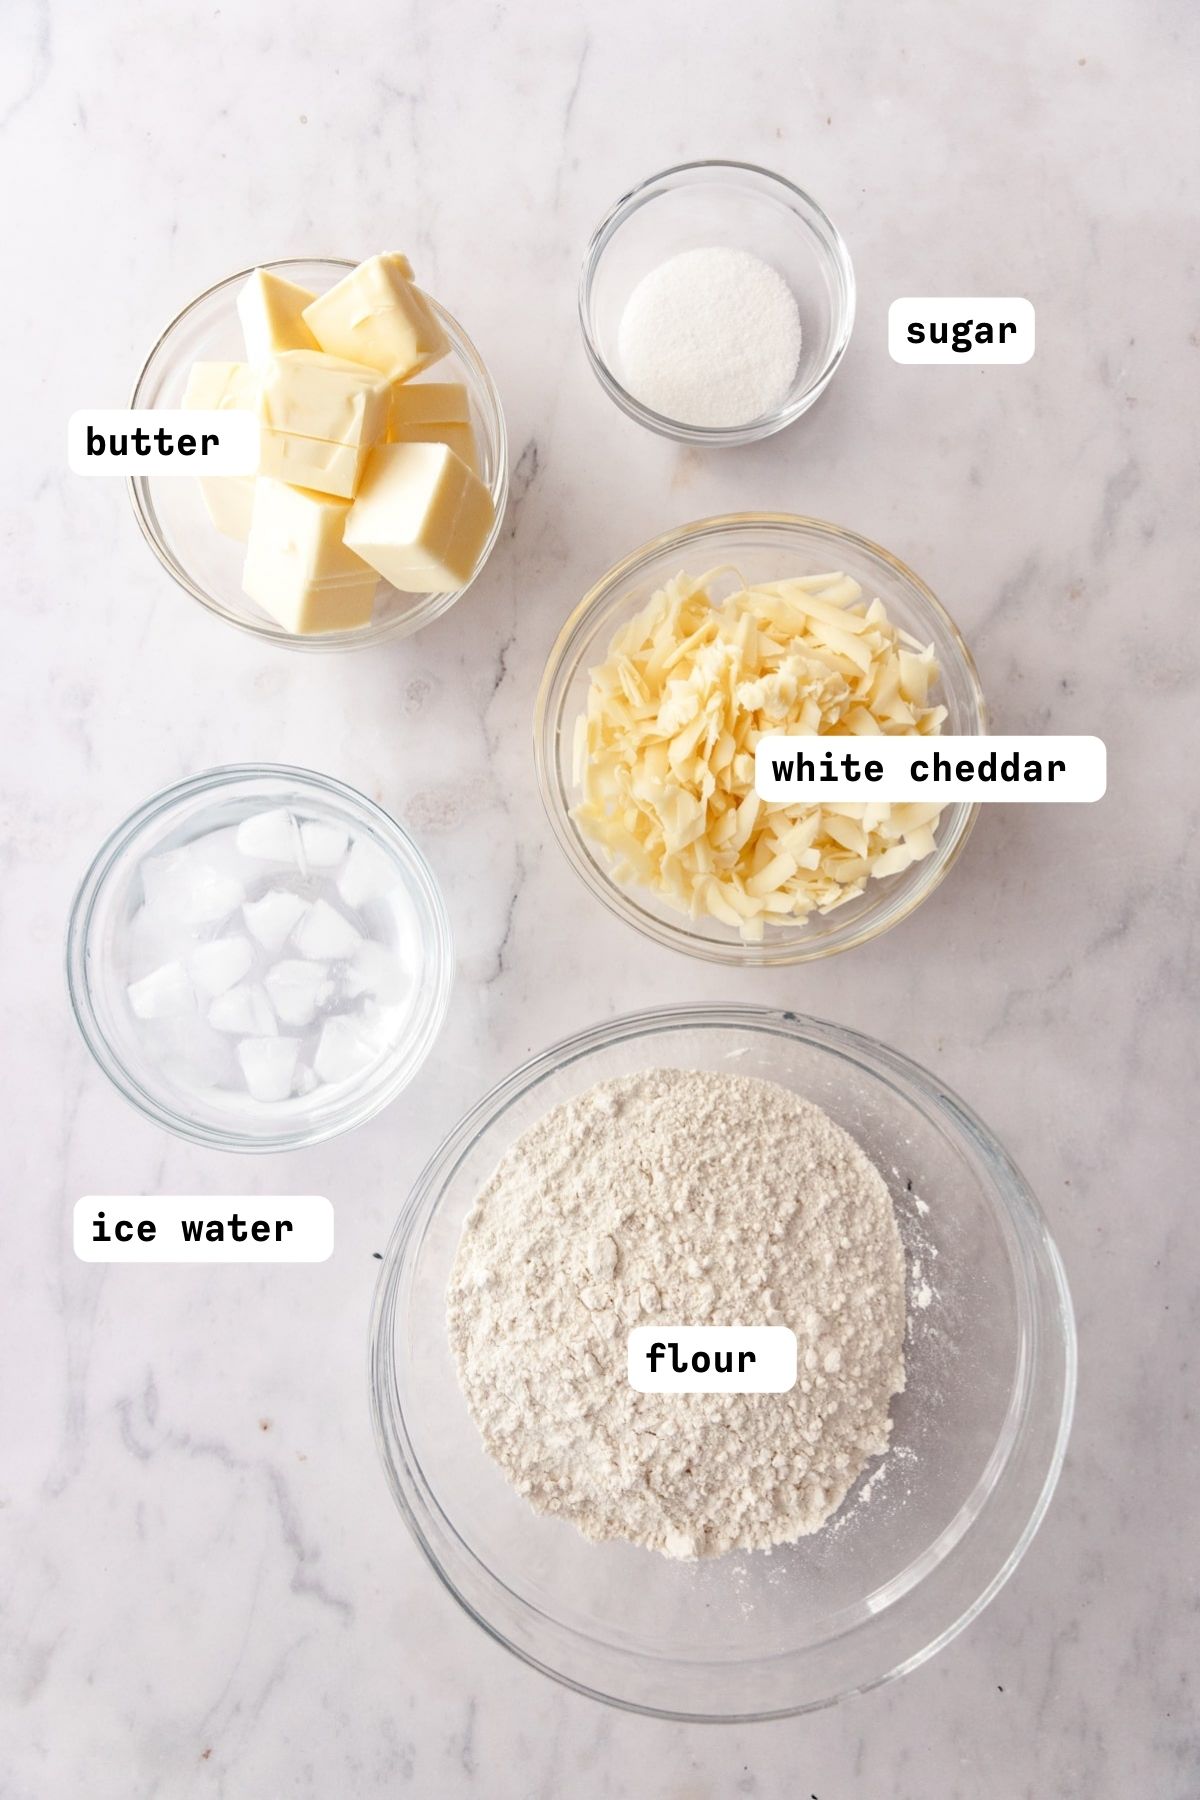 Apple Cheddar Cheese Pie Crust Ingredients. 